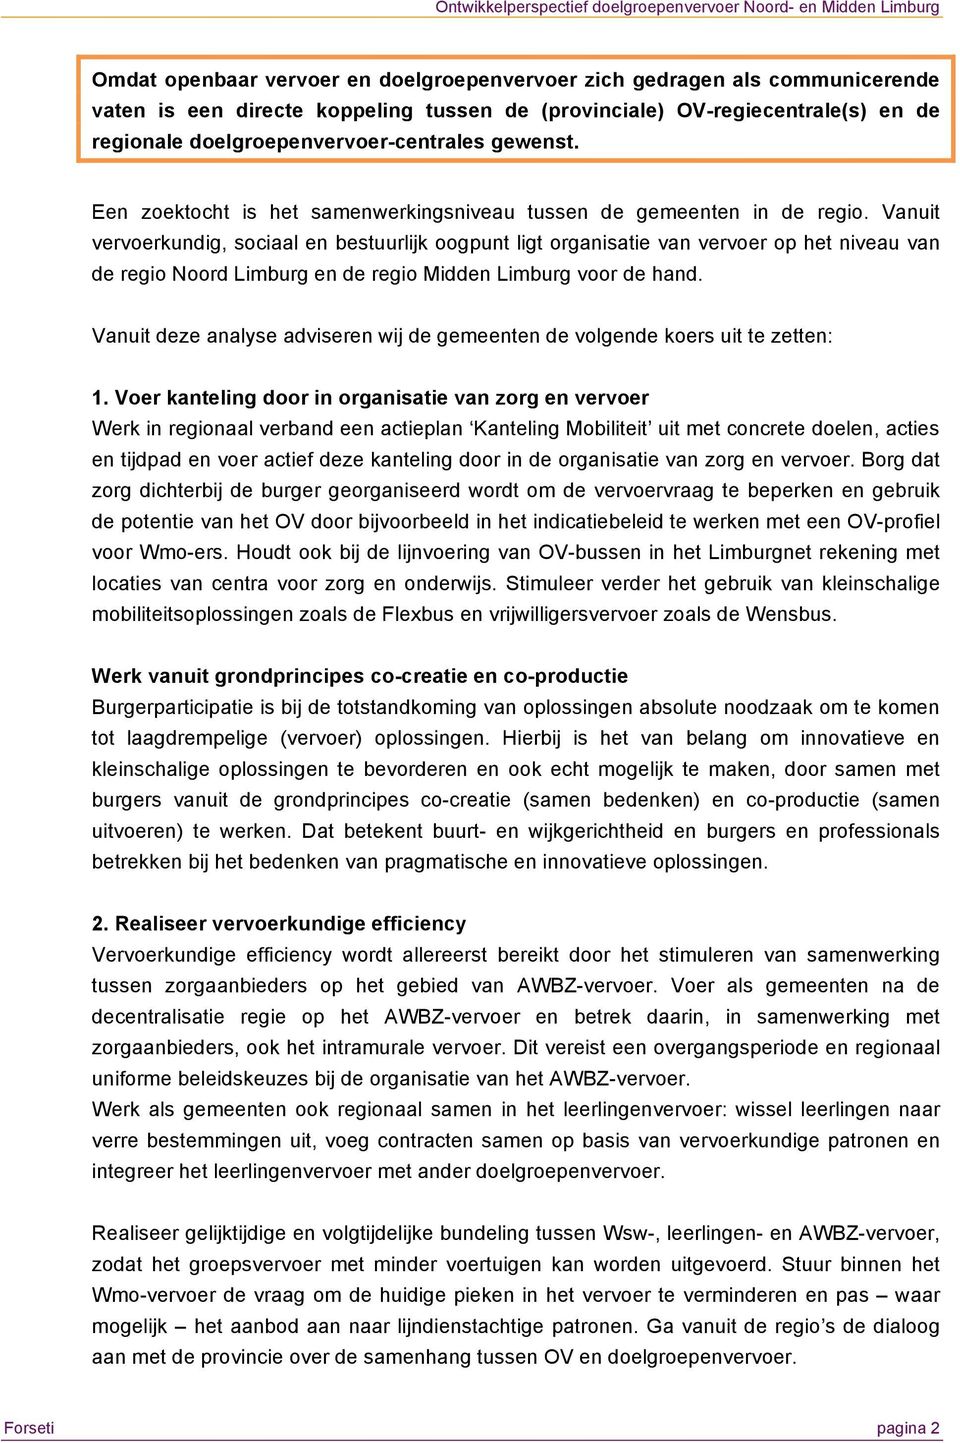 Vanuit vervoerkundig, sociaal en bestuurlijk oogpunt ligt organisatie van vervoer op het niveau van de regio Noord Limburg en de regio Midden Limburg voor de hand.